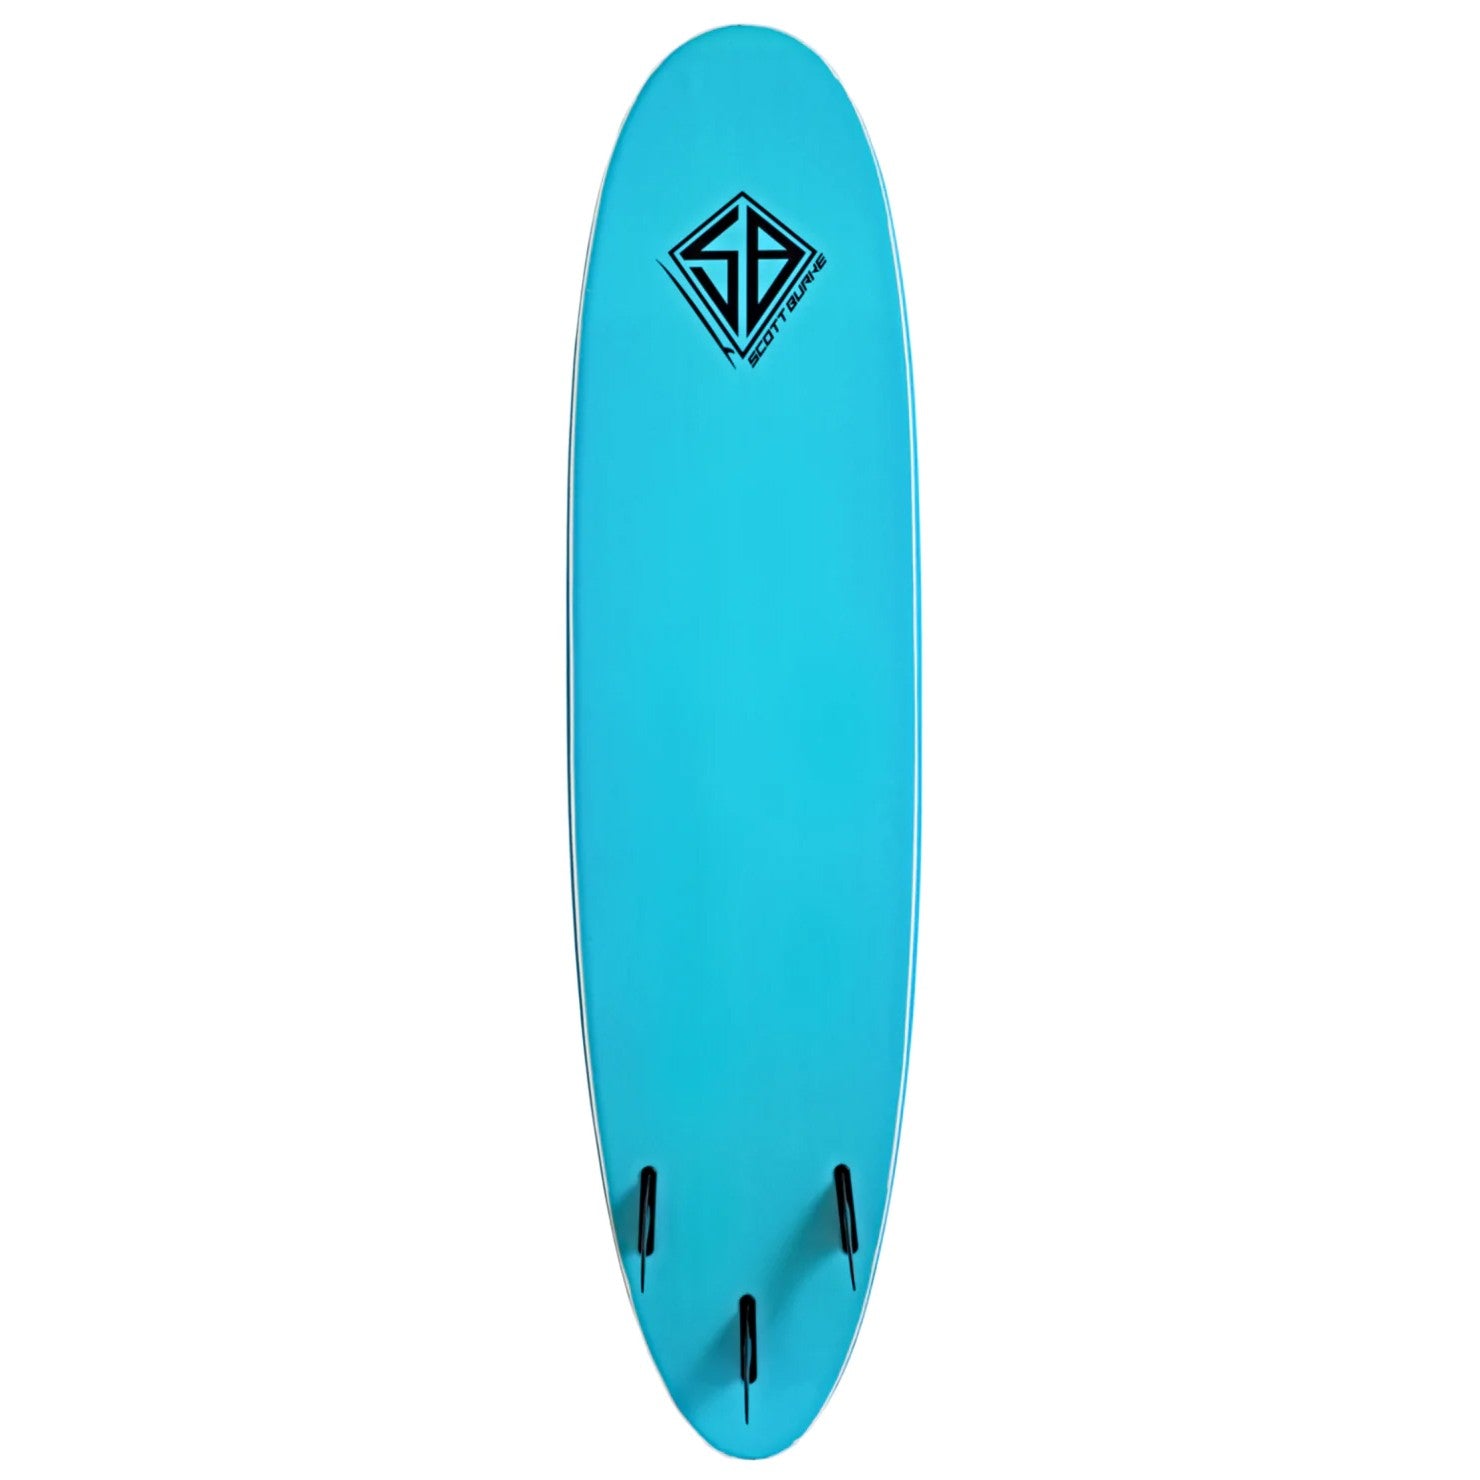 CBC - Foam Surfboard - Softboard 7'6 Scott Burke - Light Blue